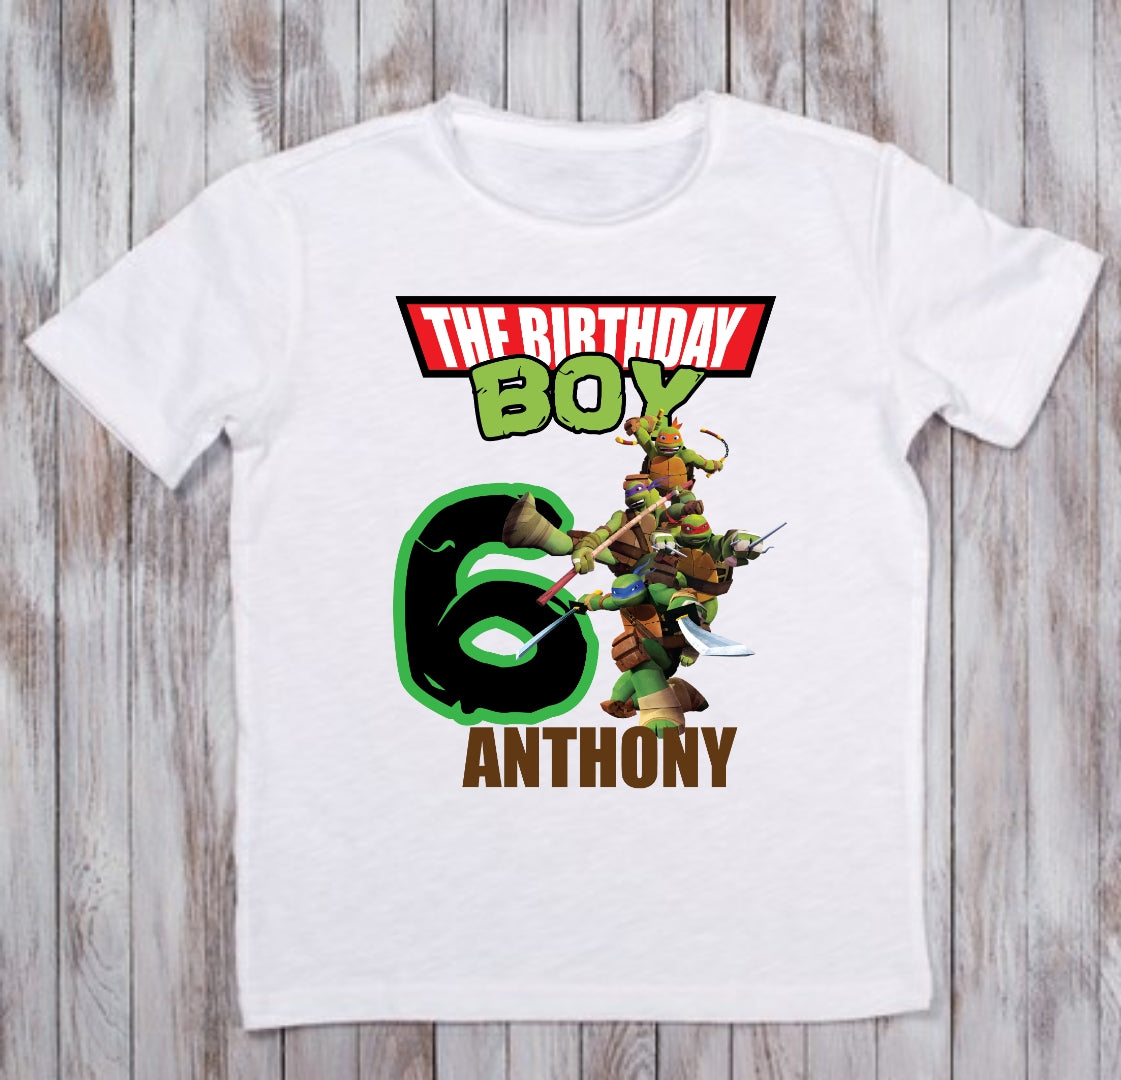 Personalized Ninja Turtles T-shirts Black 4T